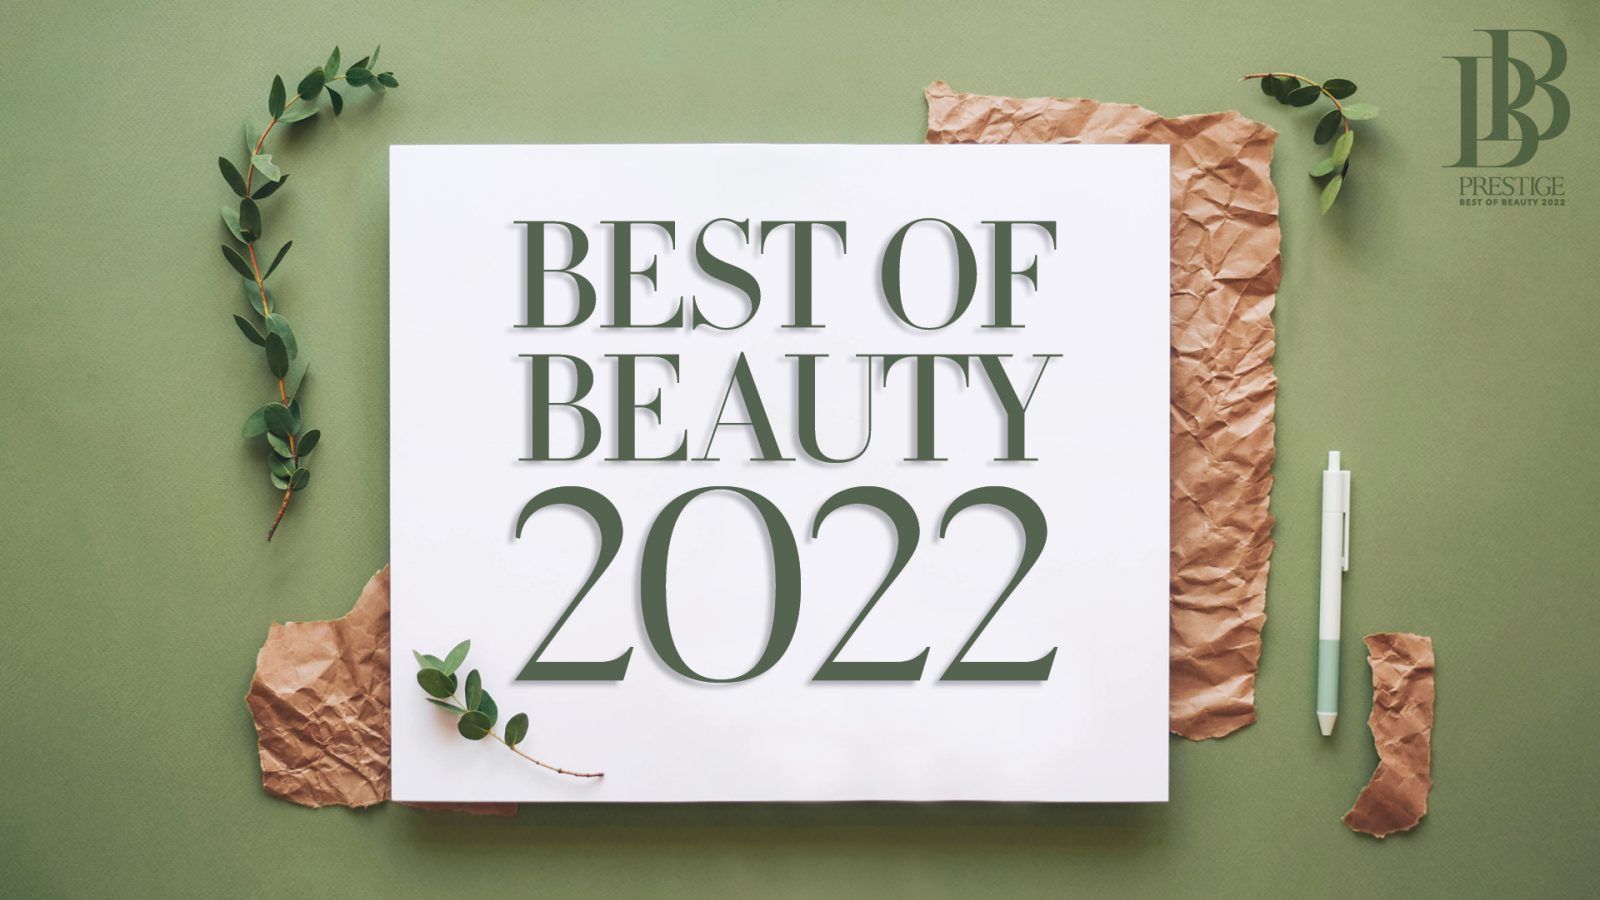 Best of Beauty 2022: Meet The Judges